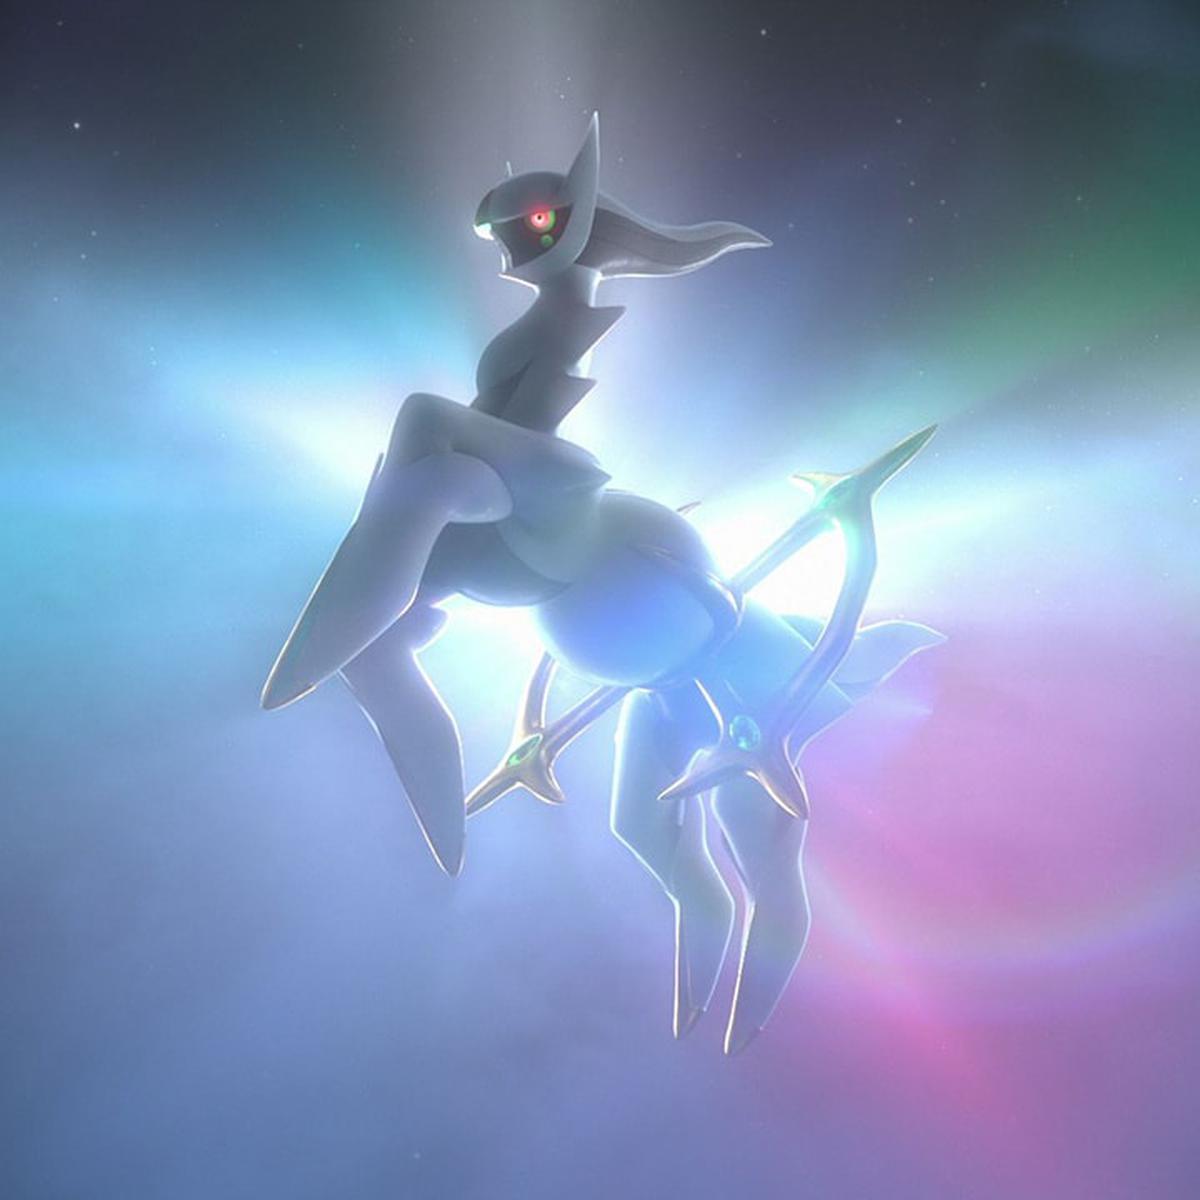 VRUTAL / ¡Leyendas Pokémon Arceus y Pokémon Diamante Brillante y Perla  Reluciente ya tienen fecha de lanzamiento!